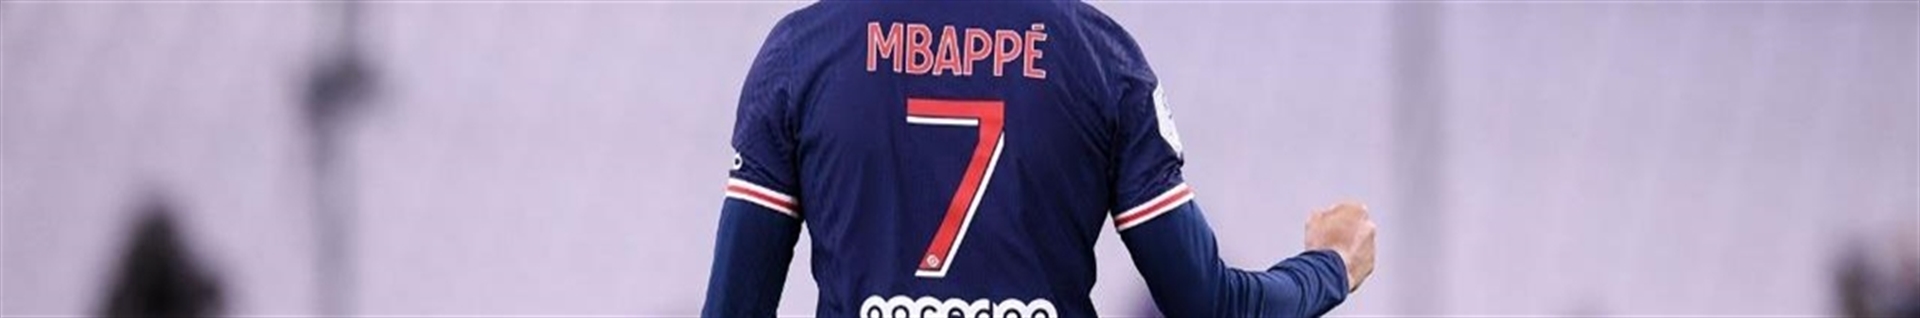 K.Mbappe